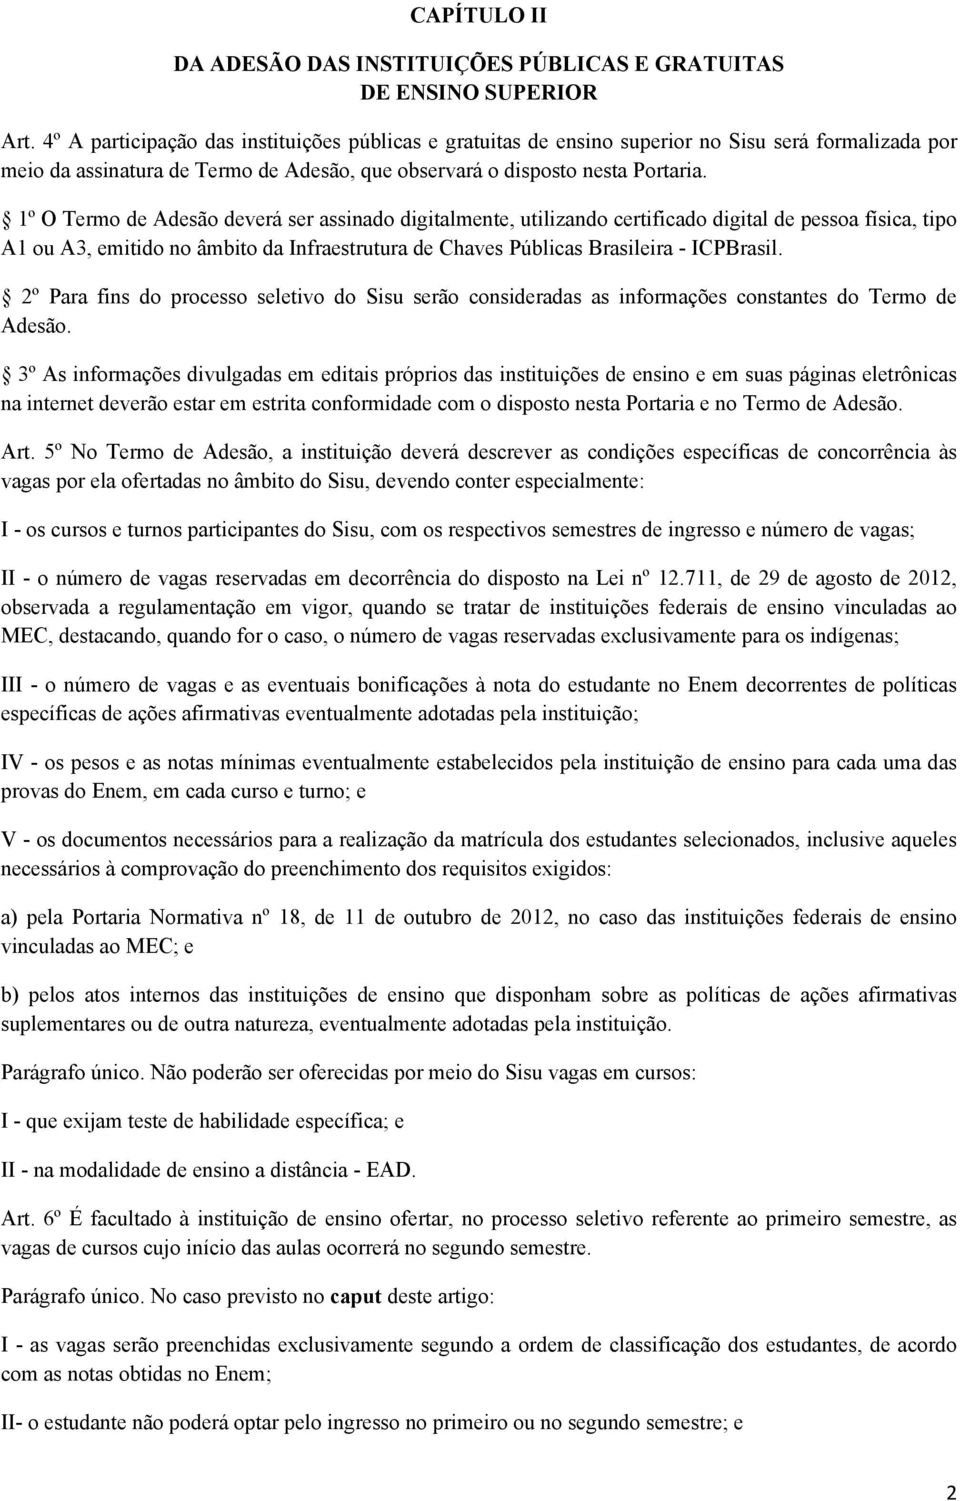 1º O Termo de Adesão deverá ser assinado digitalmente, utilizando certificado digital de pessoa física, tipo A1 ou A3, emitido no âmbito da Infraestrutura de Chaves Públicas Brasileira - ICPBrasil.